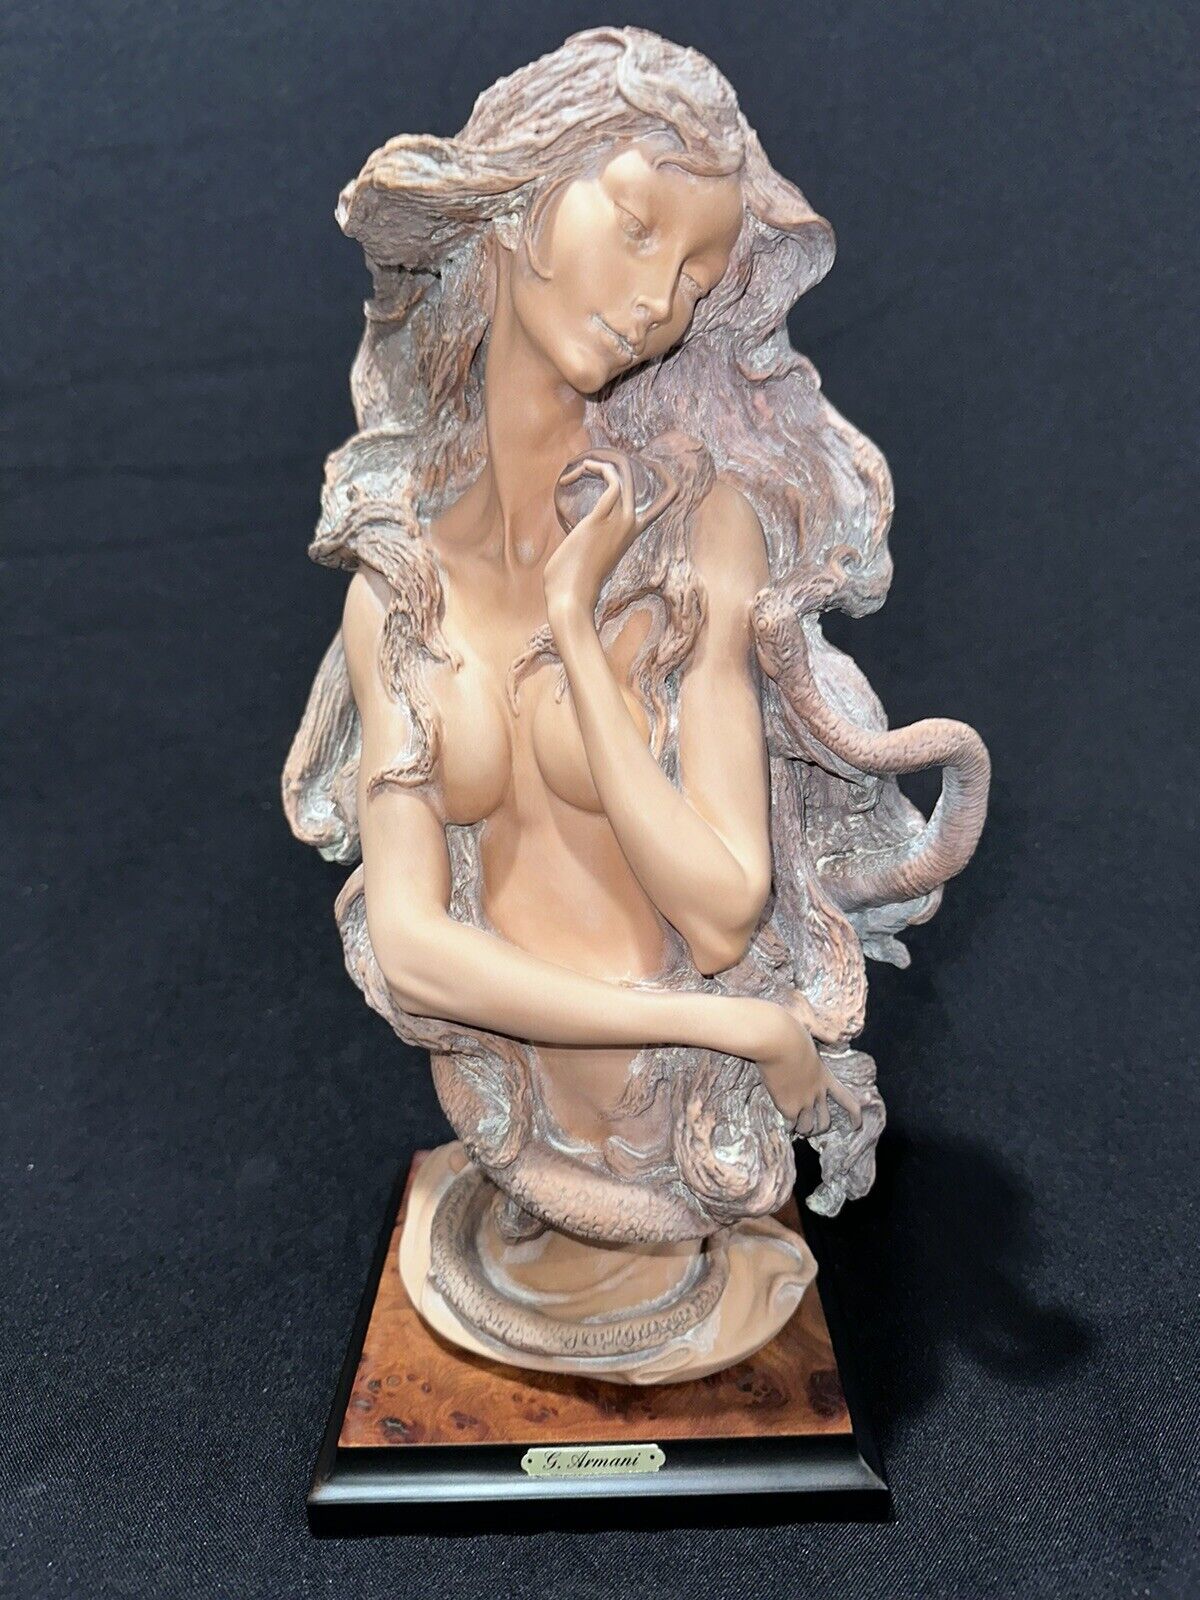 Vintage 1989 Giuseppe Armani Figurine, Eve's Bust, Limited #221/1000